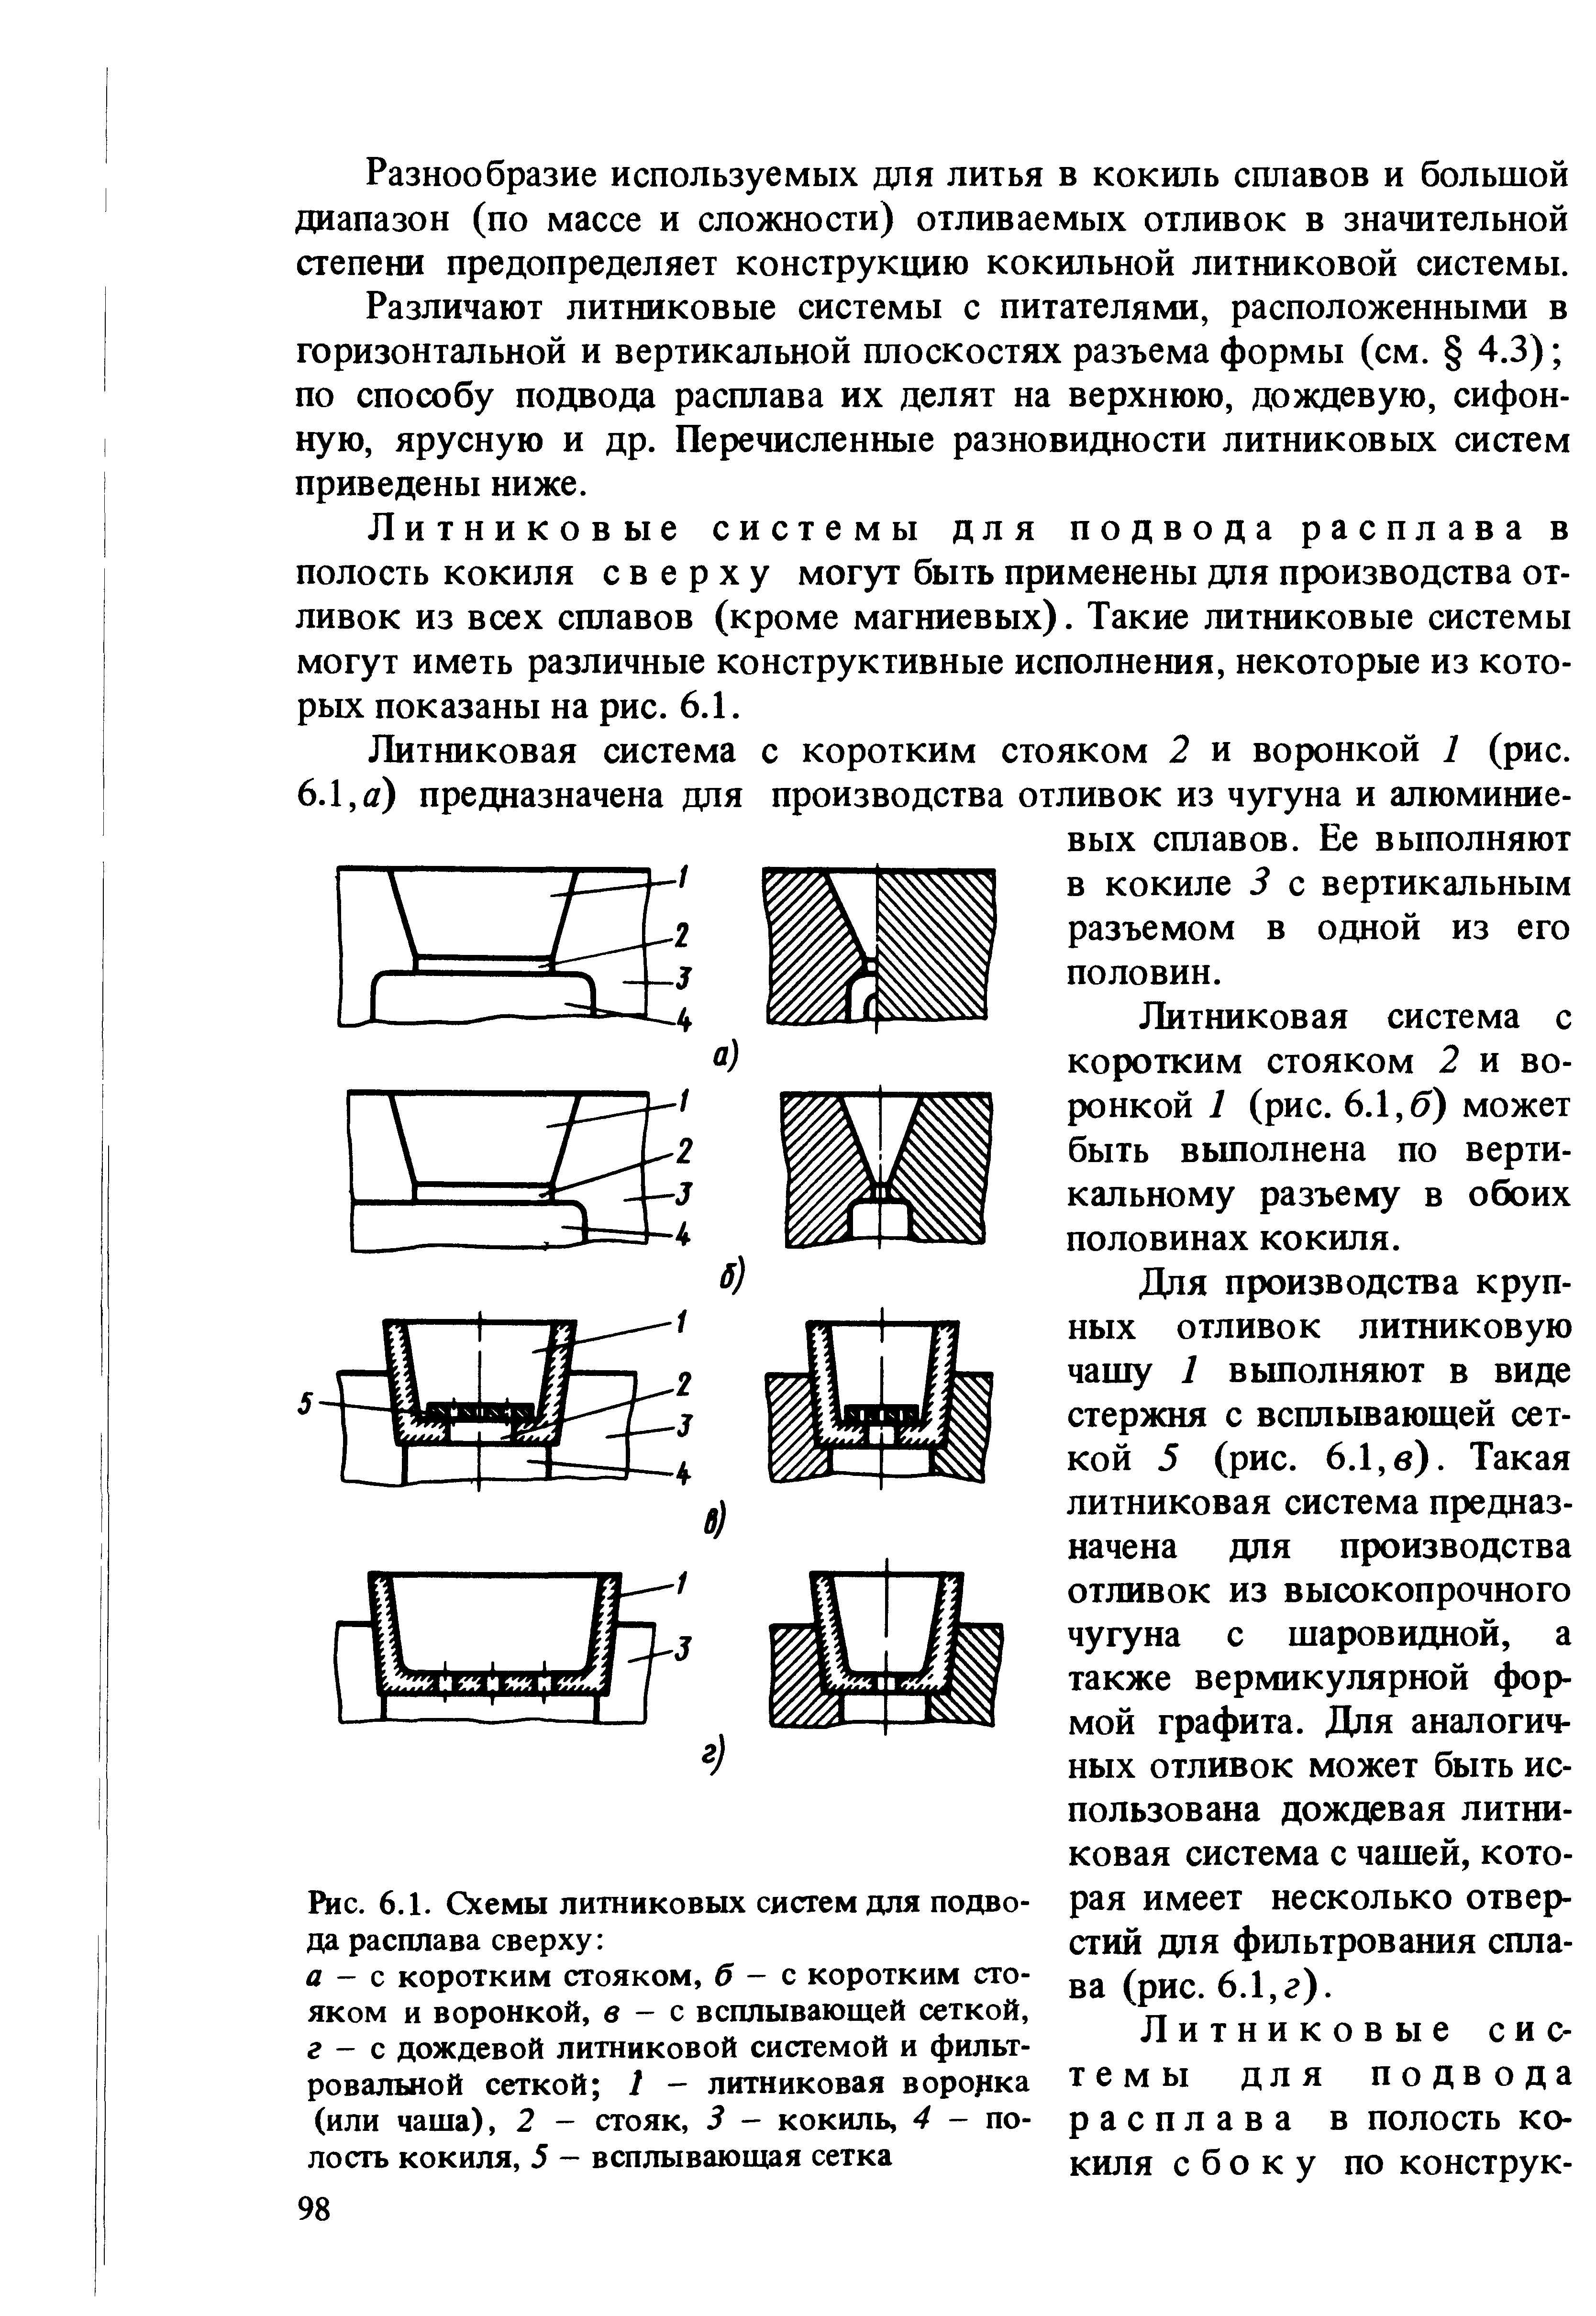 Рис. 6.1. Схемы литниковых систем для подвода расплава сверху 
